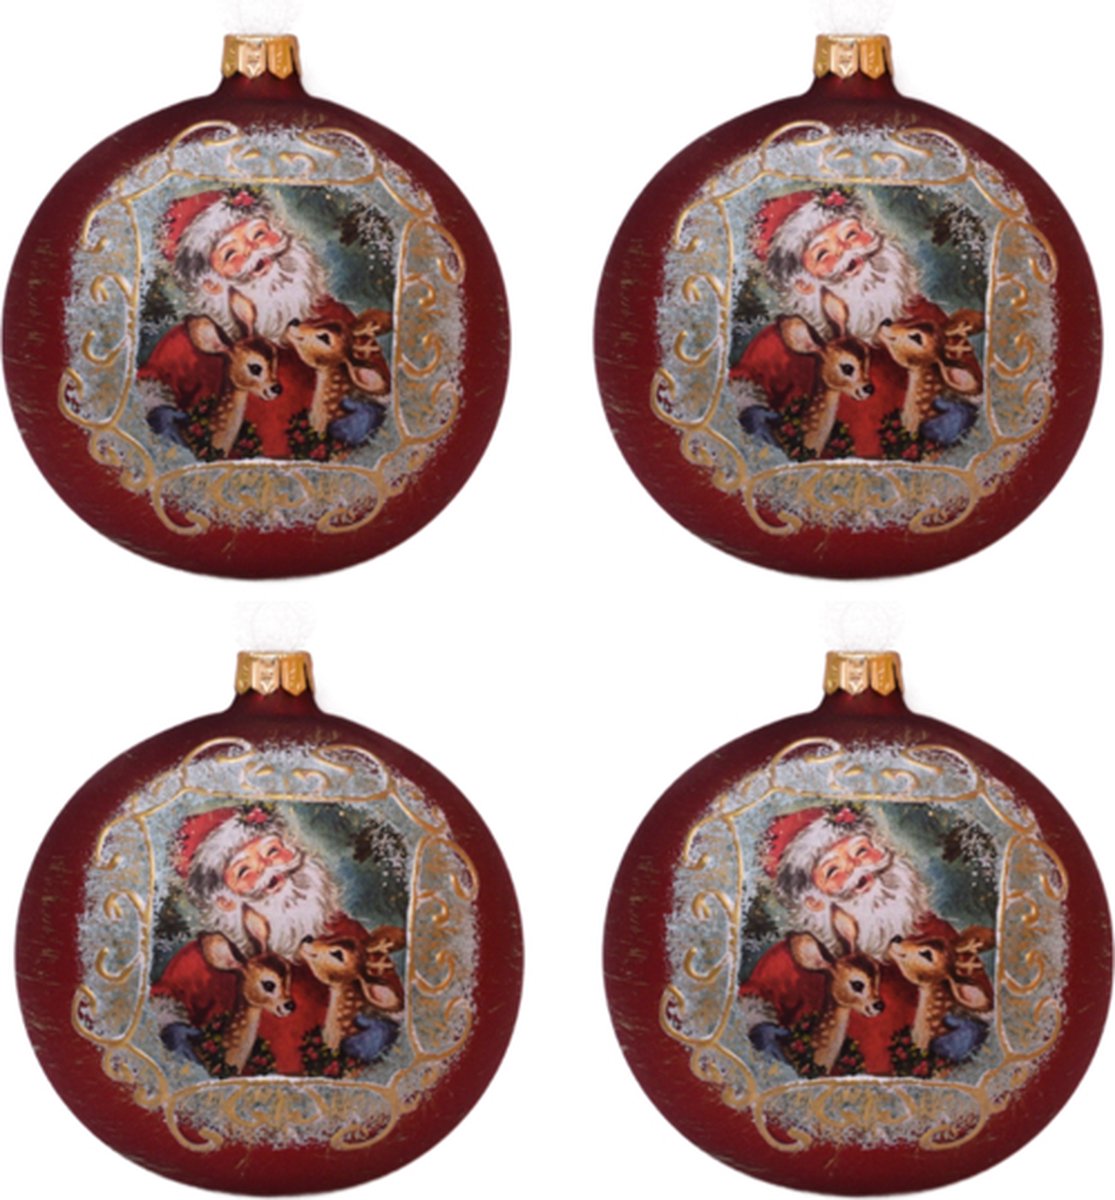 Klassieke Rode Kerstballen met Schattige Kerstman en Rendieren - doosje van 4 kerstballen van glas 8 cm